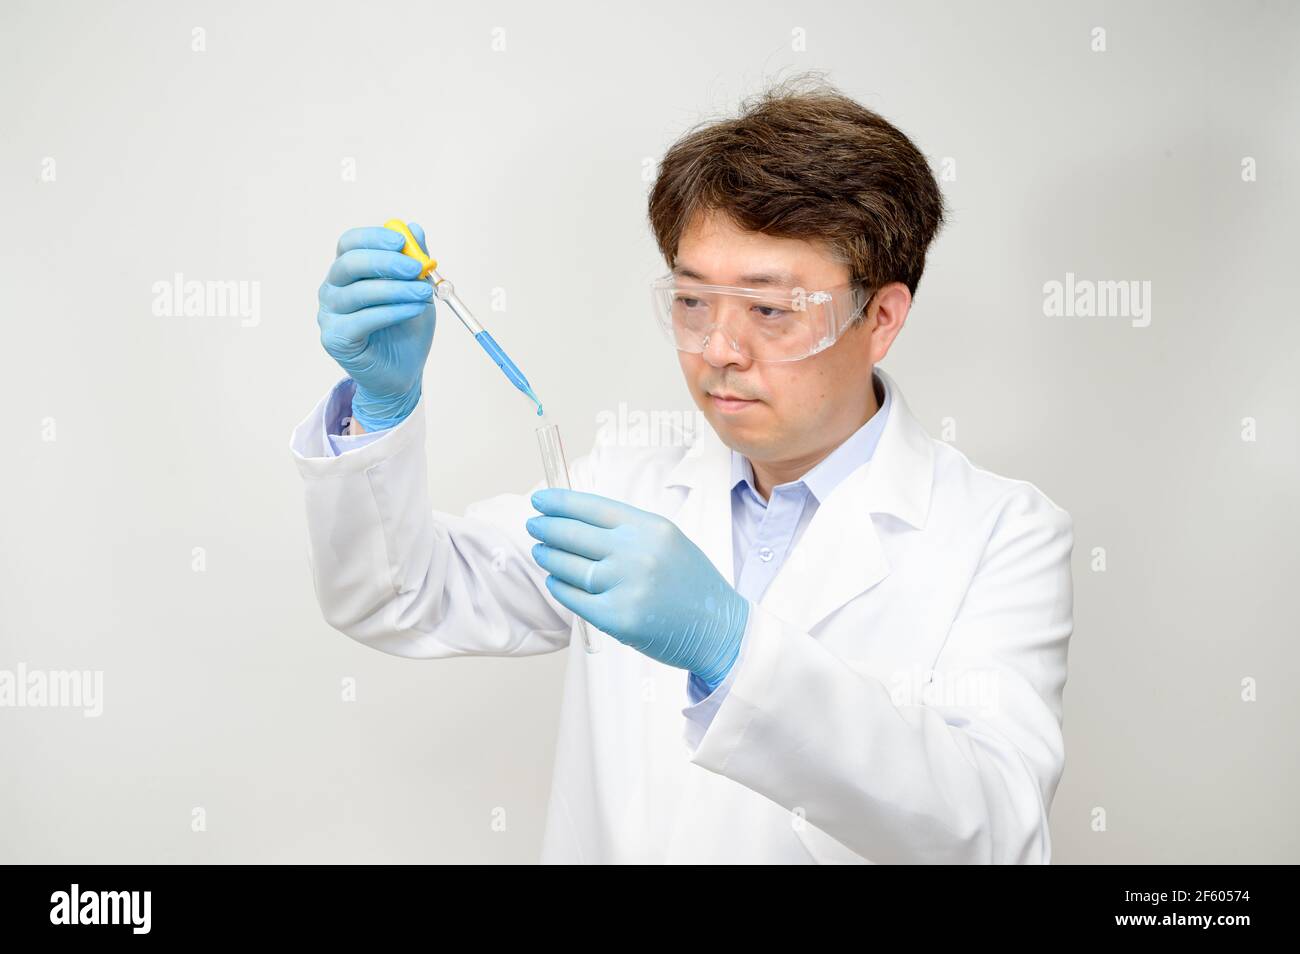 Porträt eines asiatischen Wissenschaftlers mit einem weißen Laborkleid und Handschuhen, der einen experimentellen Behälter in der Hand hält. Stockfoto